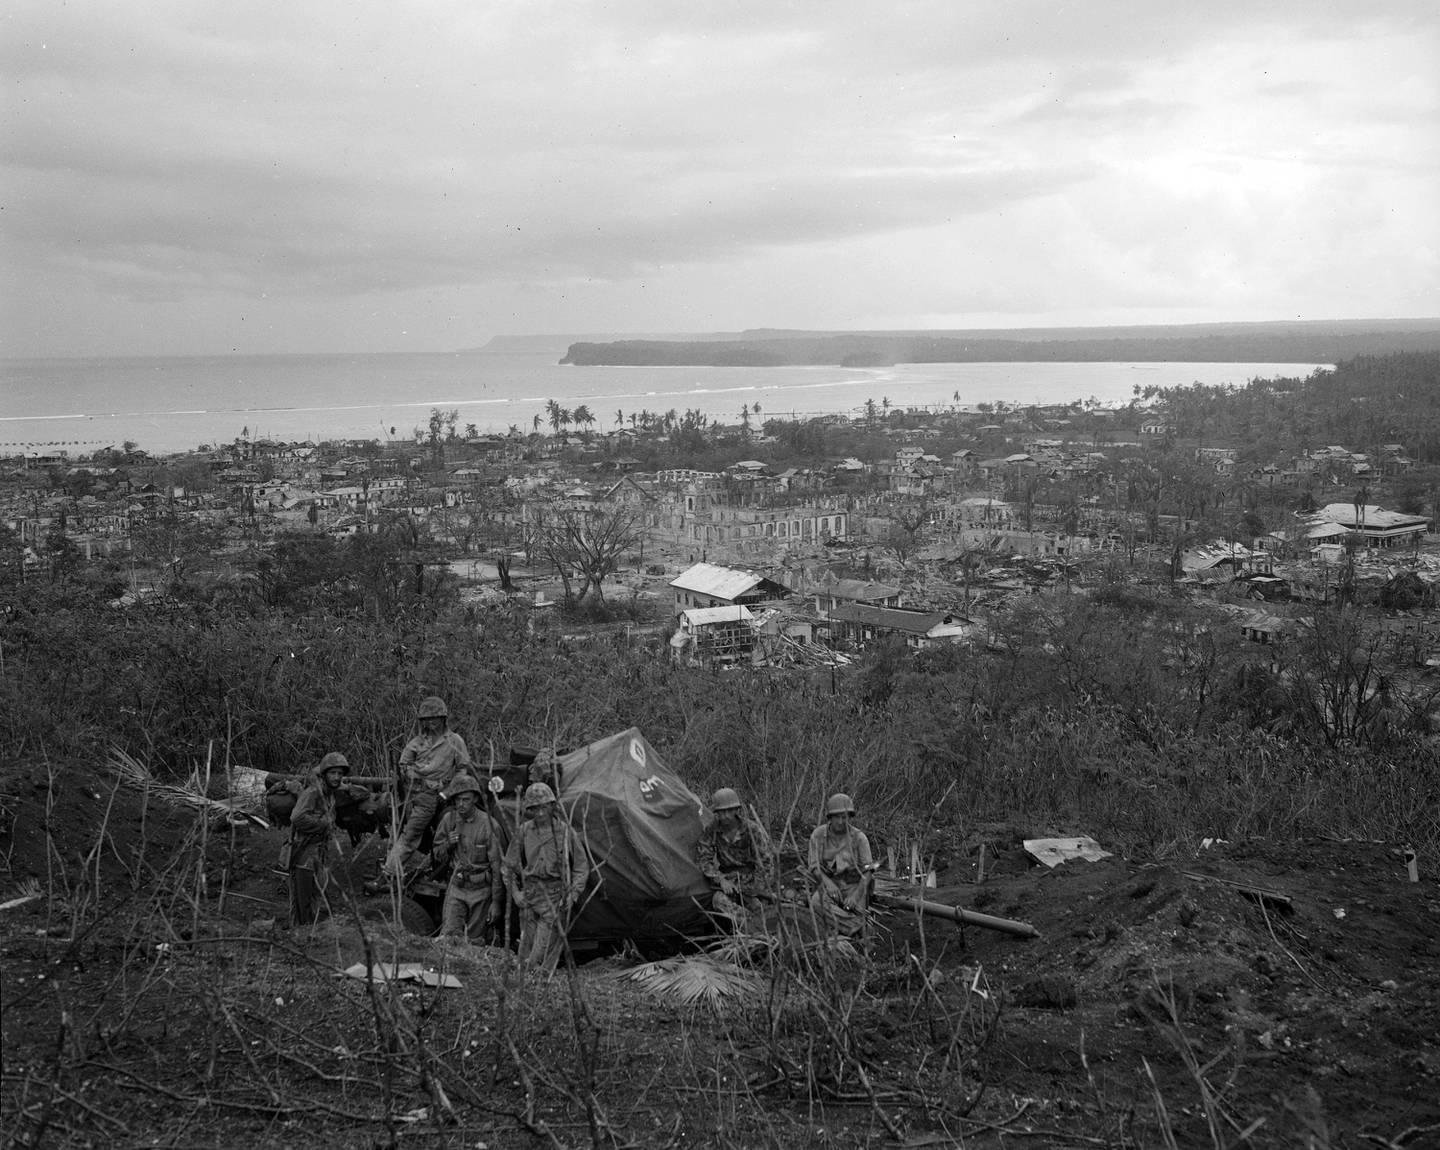 WWII Hagatna, Guam